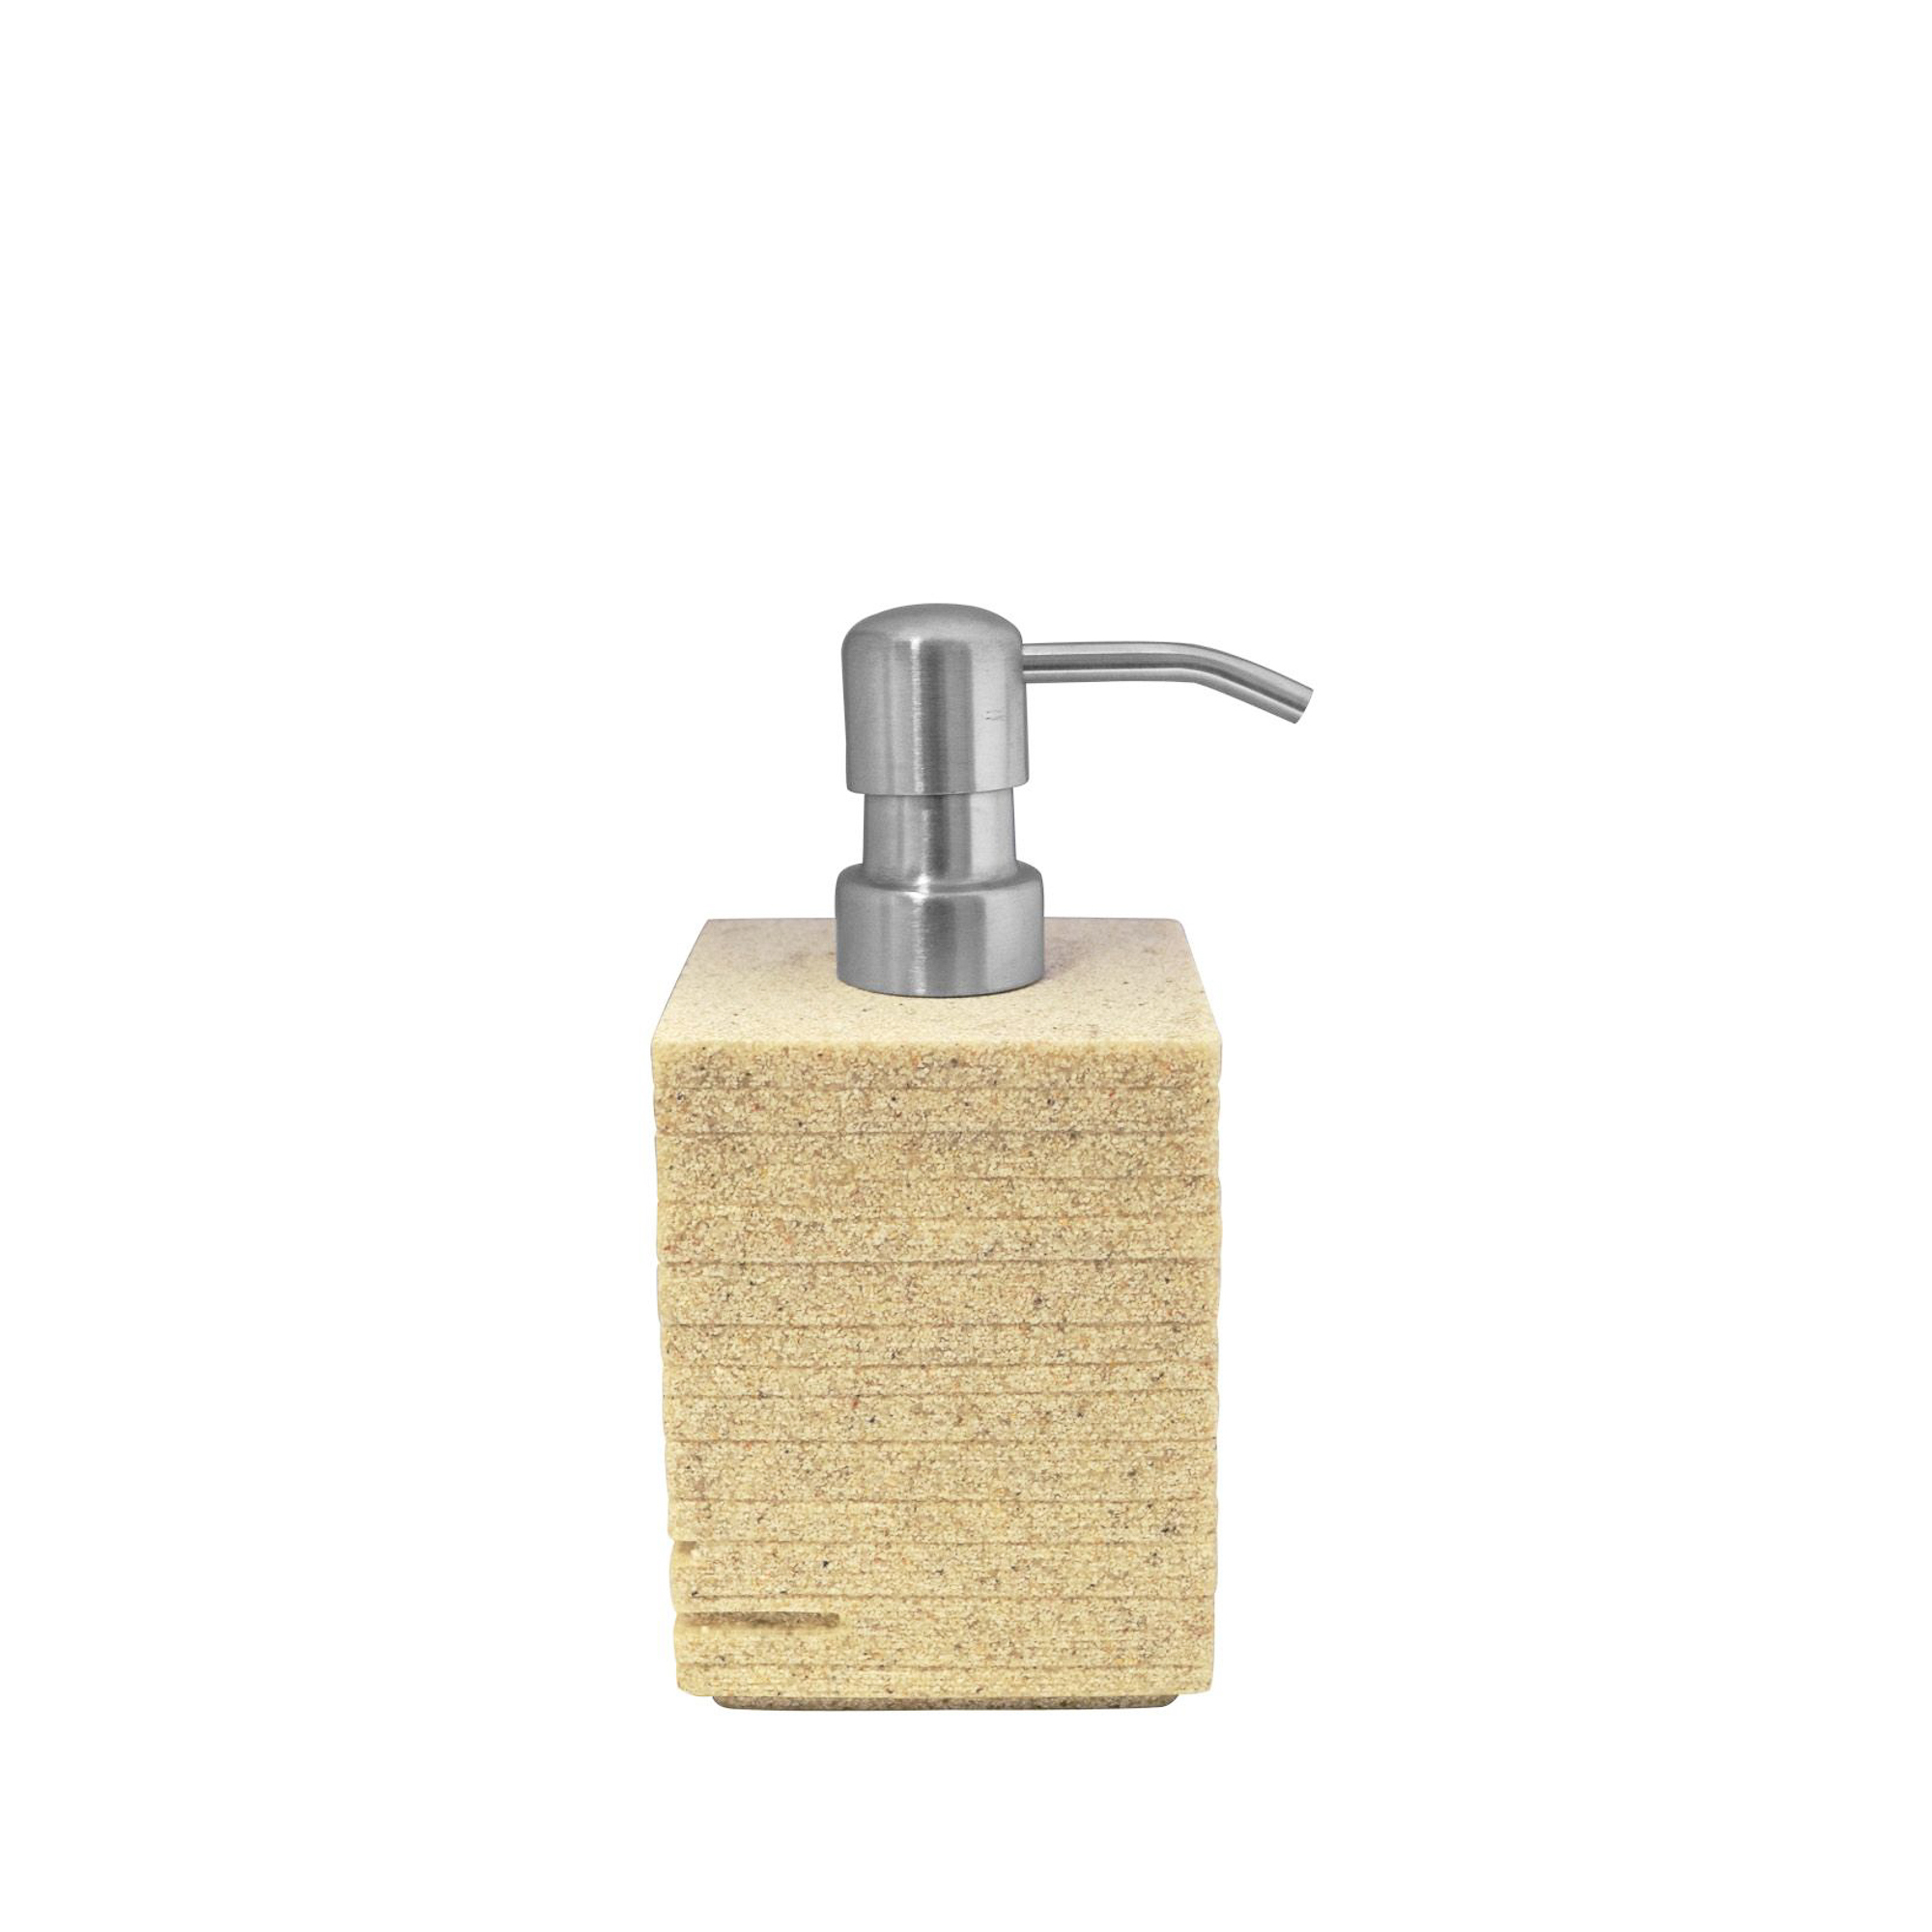 дозатор ridder brick 22150527 серебряный Дозатор для жидкого мыла Brick бежевый Ridder